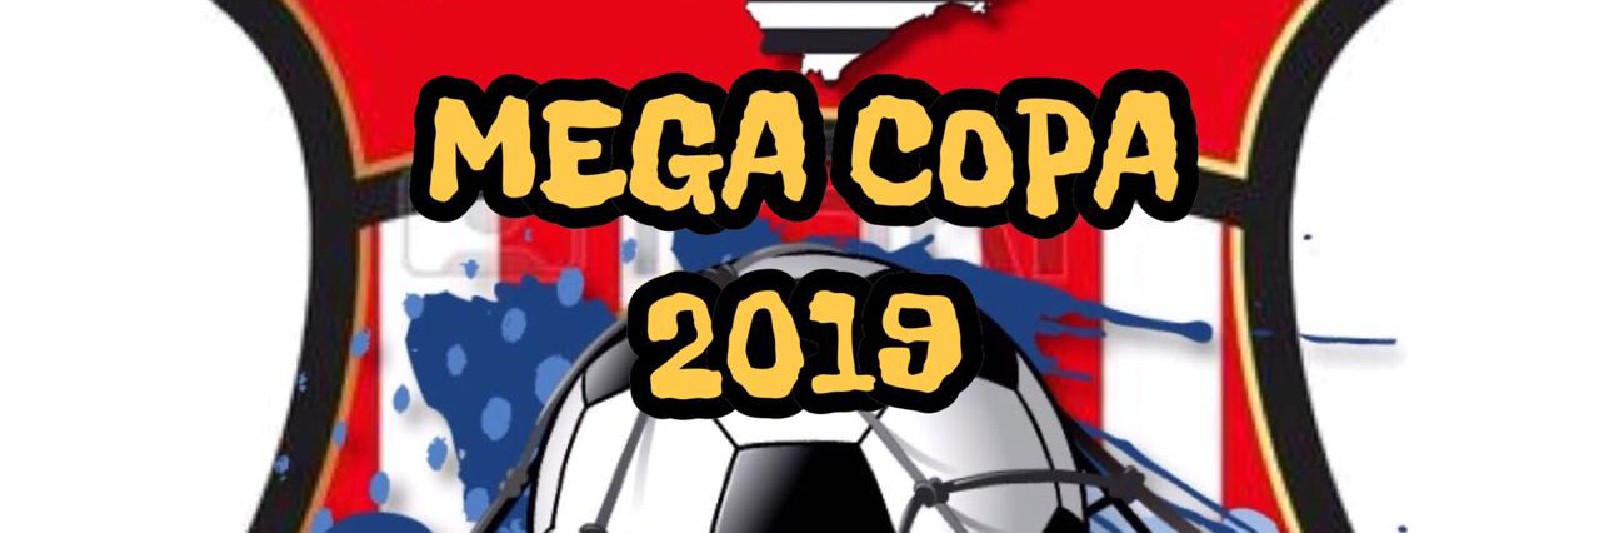 MEGA COPA 2019